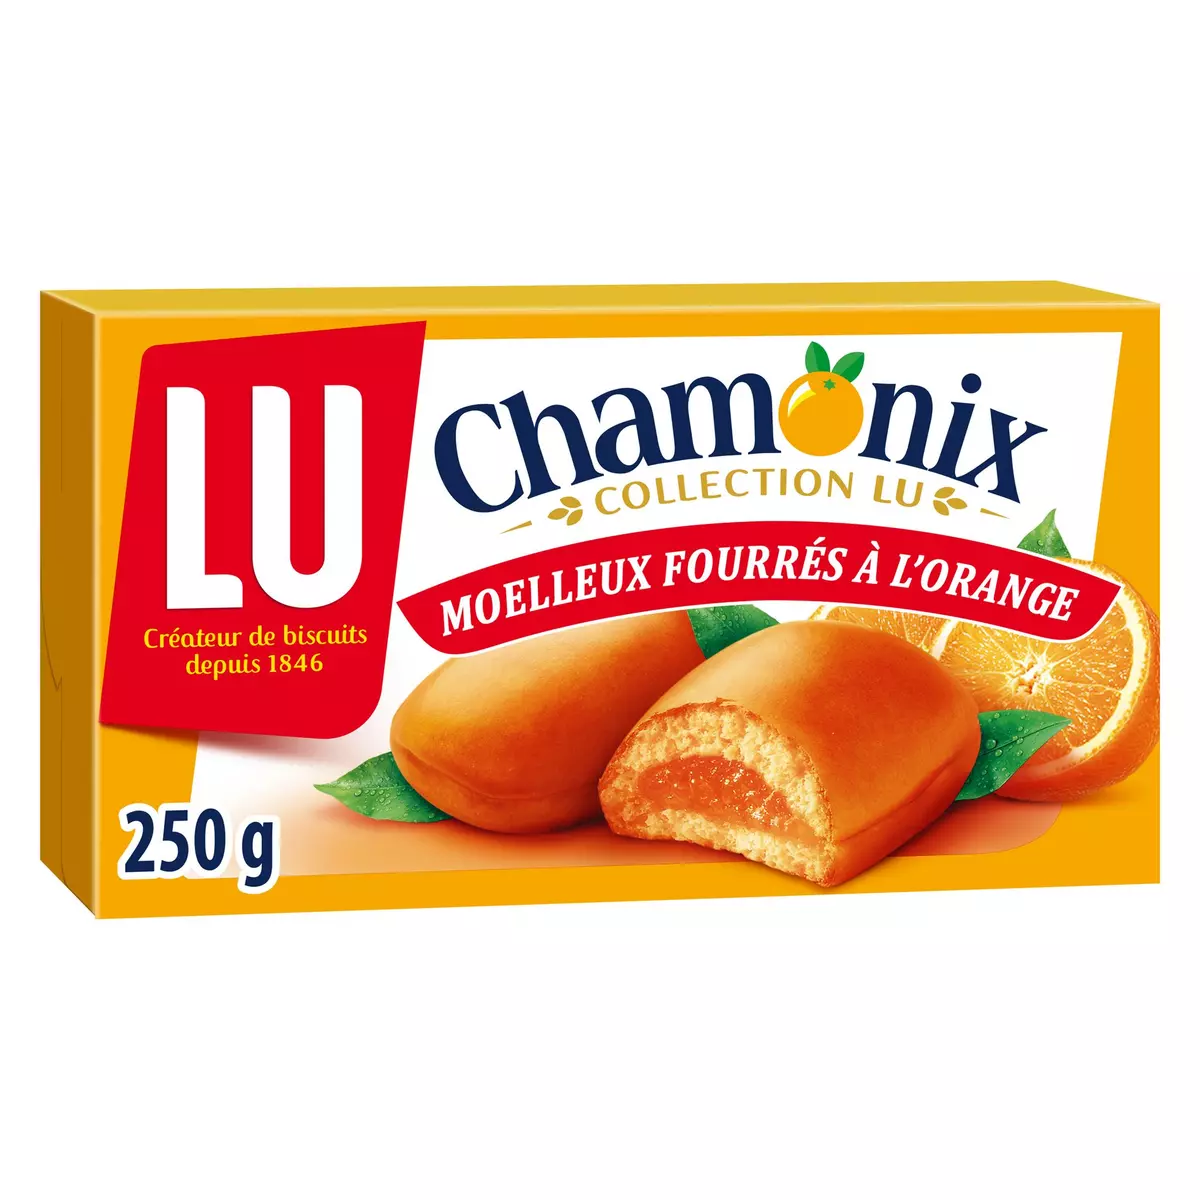 LU Chamonix moelleux fourrés à l'orange 20 biscuits 250g